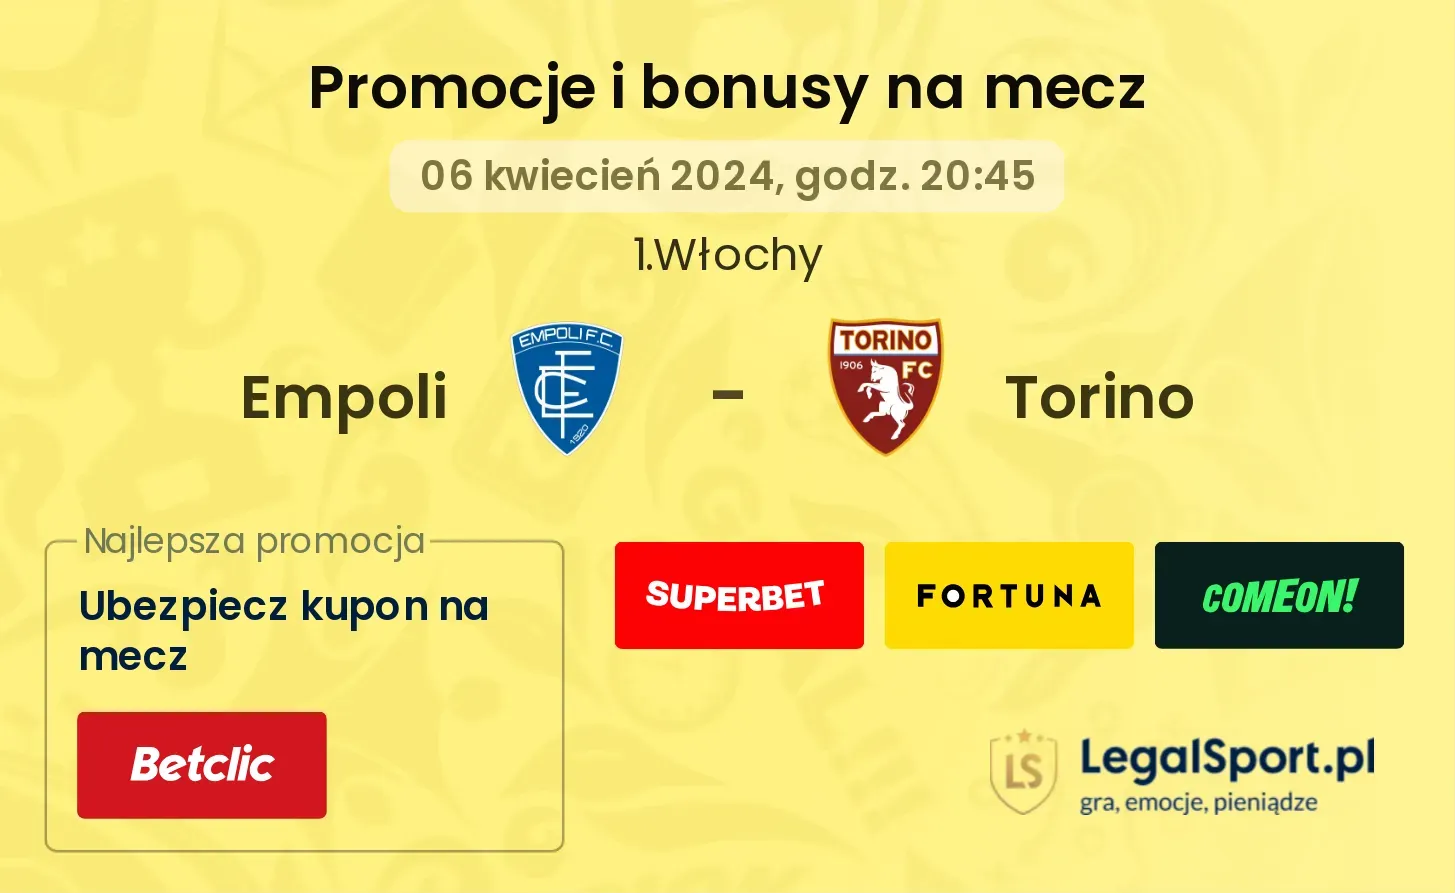 Empoli - Torino promocje bonusy na mecz